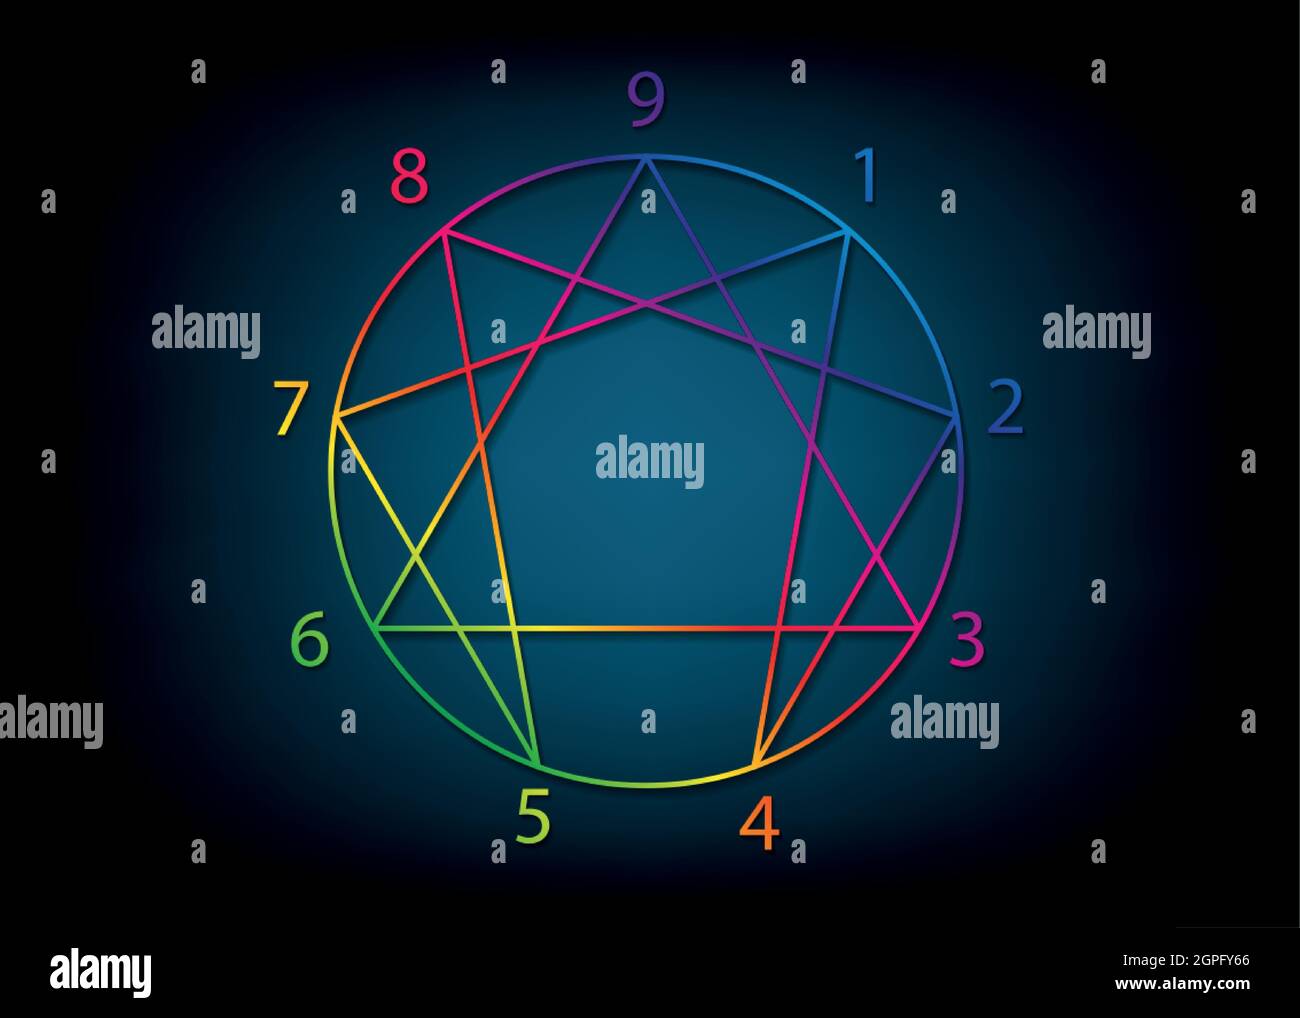 Enneagram icône, géométrie sacrée, diagramme coloré dégradé logo modèle, avec des nombres de un à neuf concernant les neuf types de personnalité, signe Illustration de Vecteur